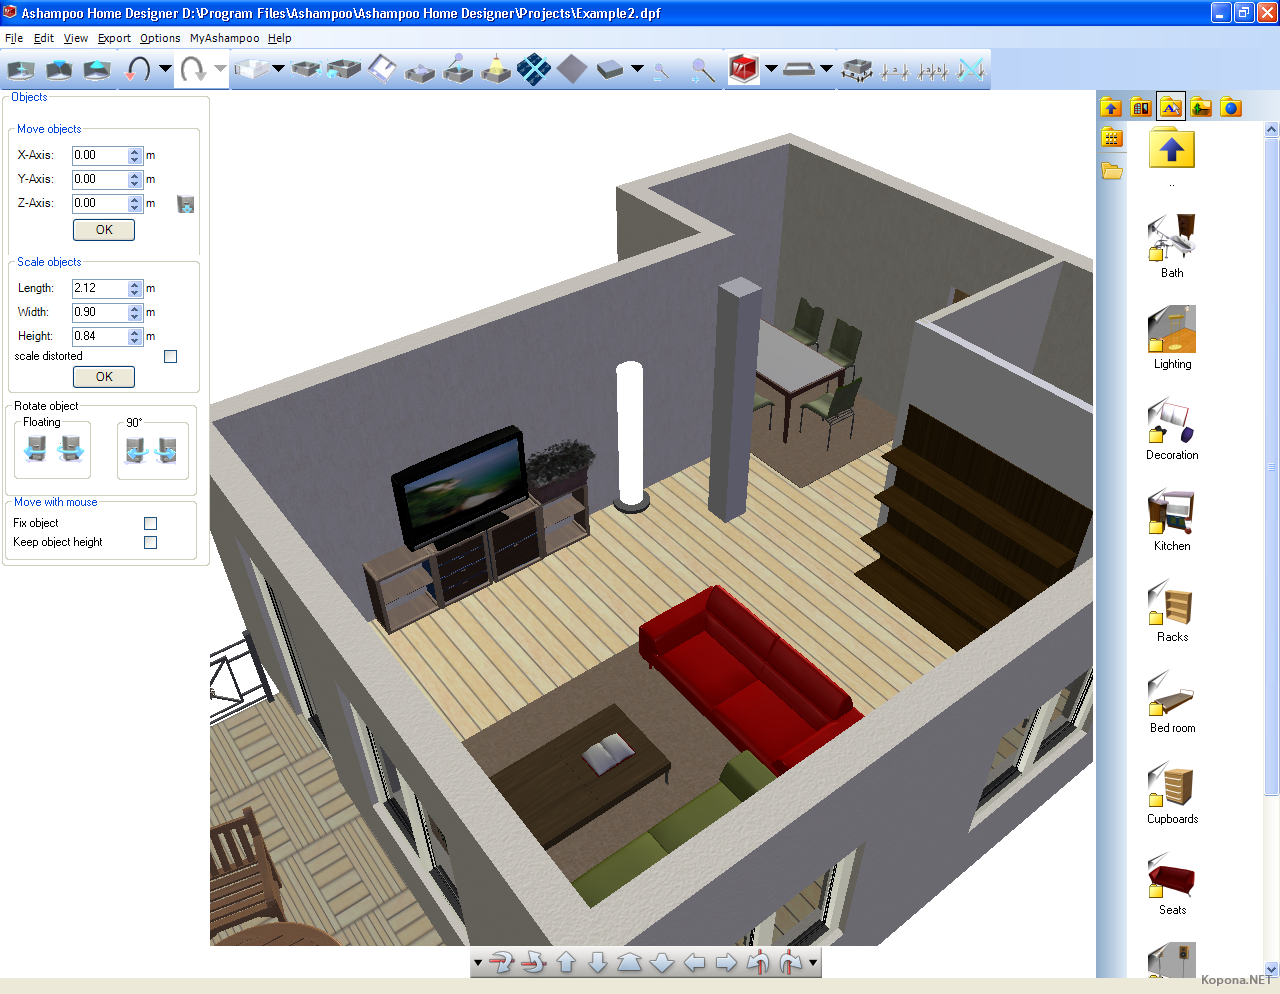 Ashampoo Home Designer Pro 2 проекты. 3d программа расстановки мебели. Спроектировать расстановку мебели. Программа для 3д расстановки мебели. Расставить мебель в комнате конструктор